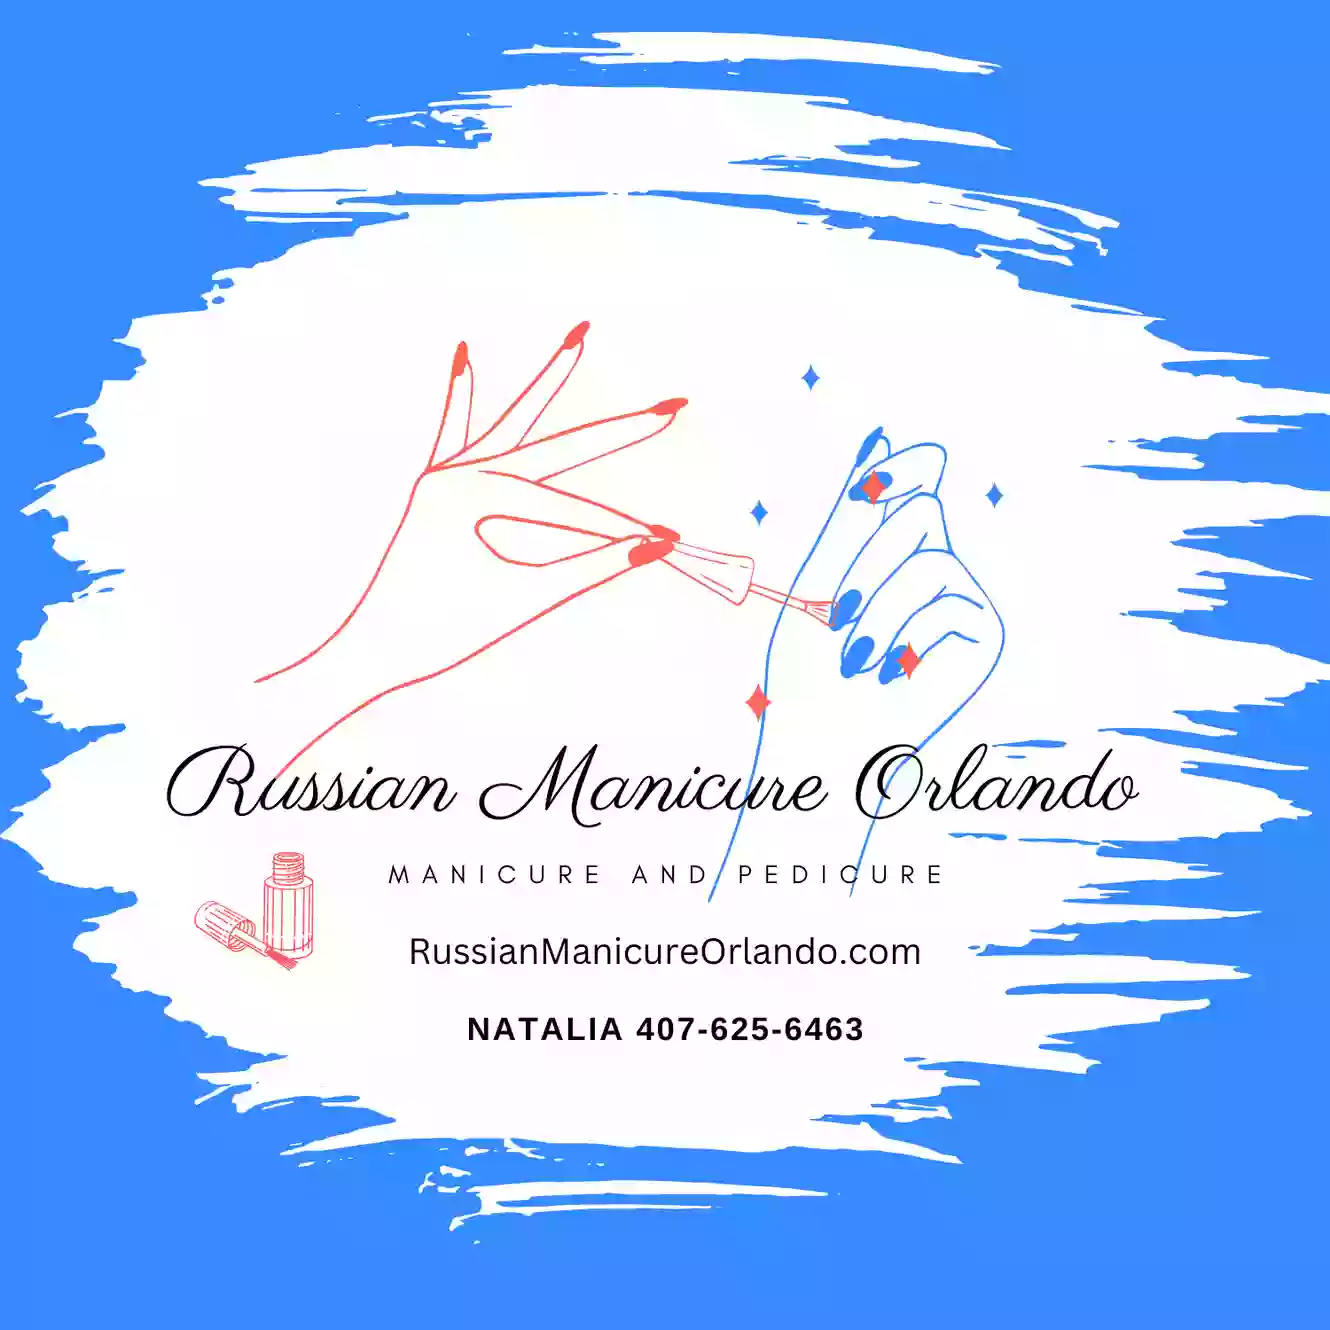 Russian Manicure Orlando